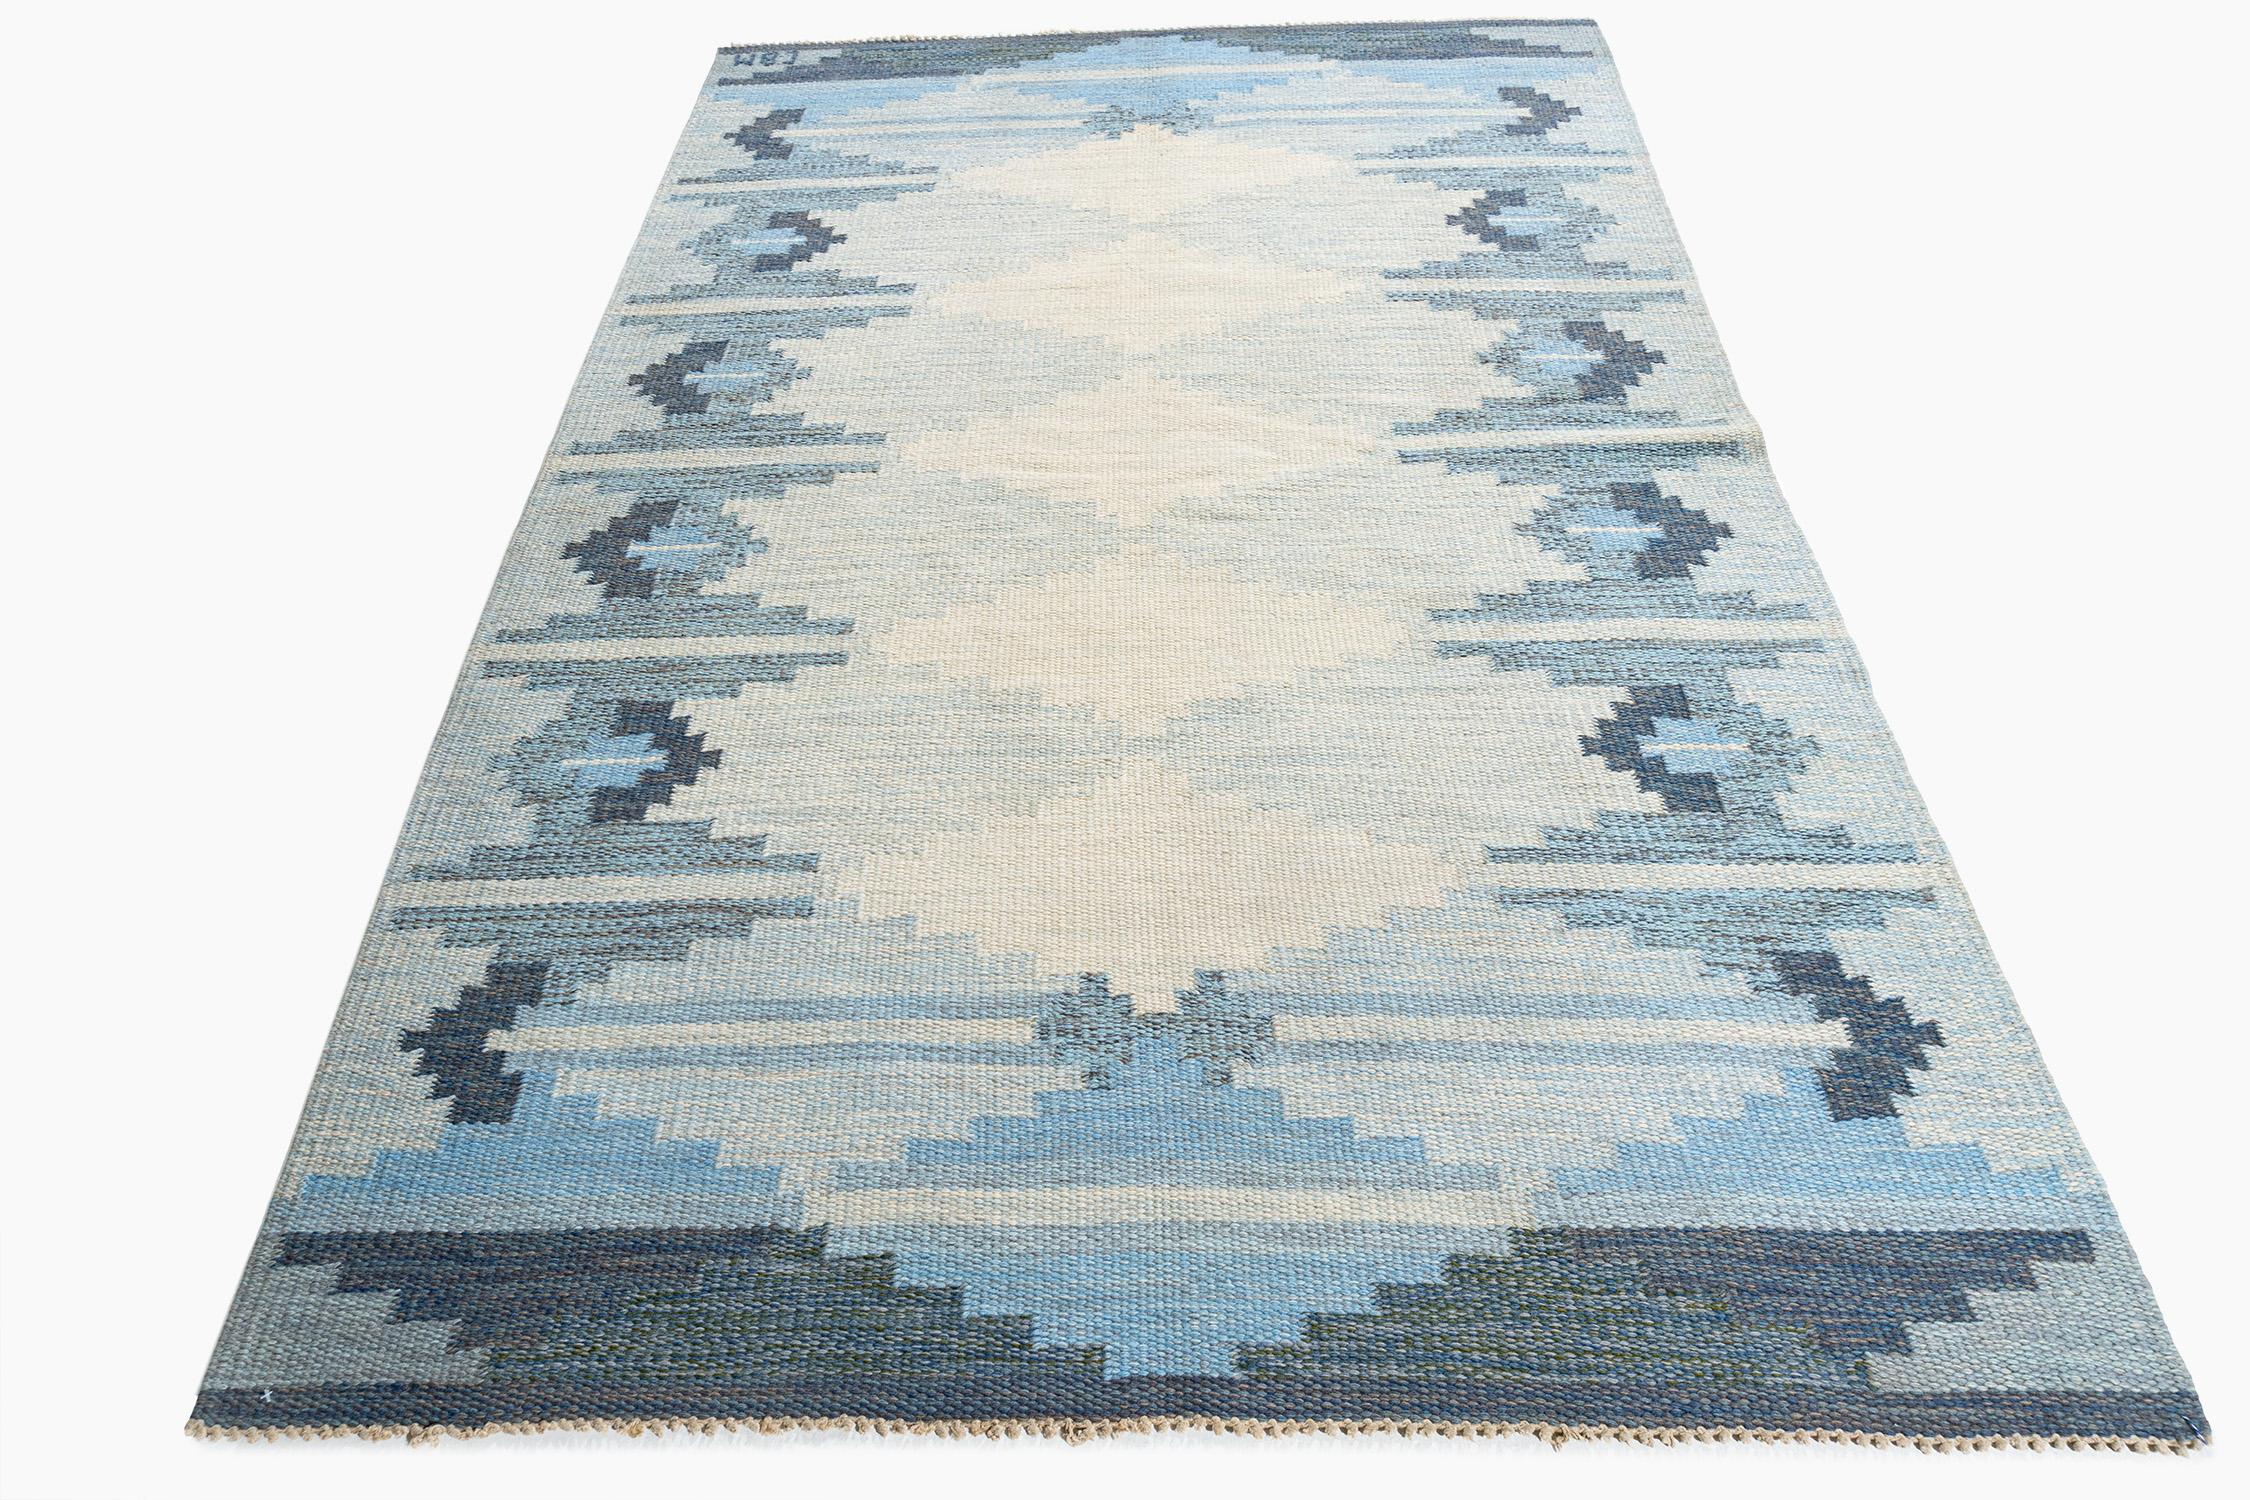 Vintage Swedish Scandinavian Area rug 4'6 X 6'10. Un charmant tapis scandinave noué à la main, datant du milieu du siècle dernier (1960), avec de merveilleuses couleurs tissées dans le design. Couleurs : nuances de bleu ciel pâle/bleu ardoise/bleu